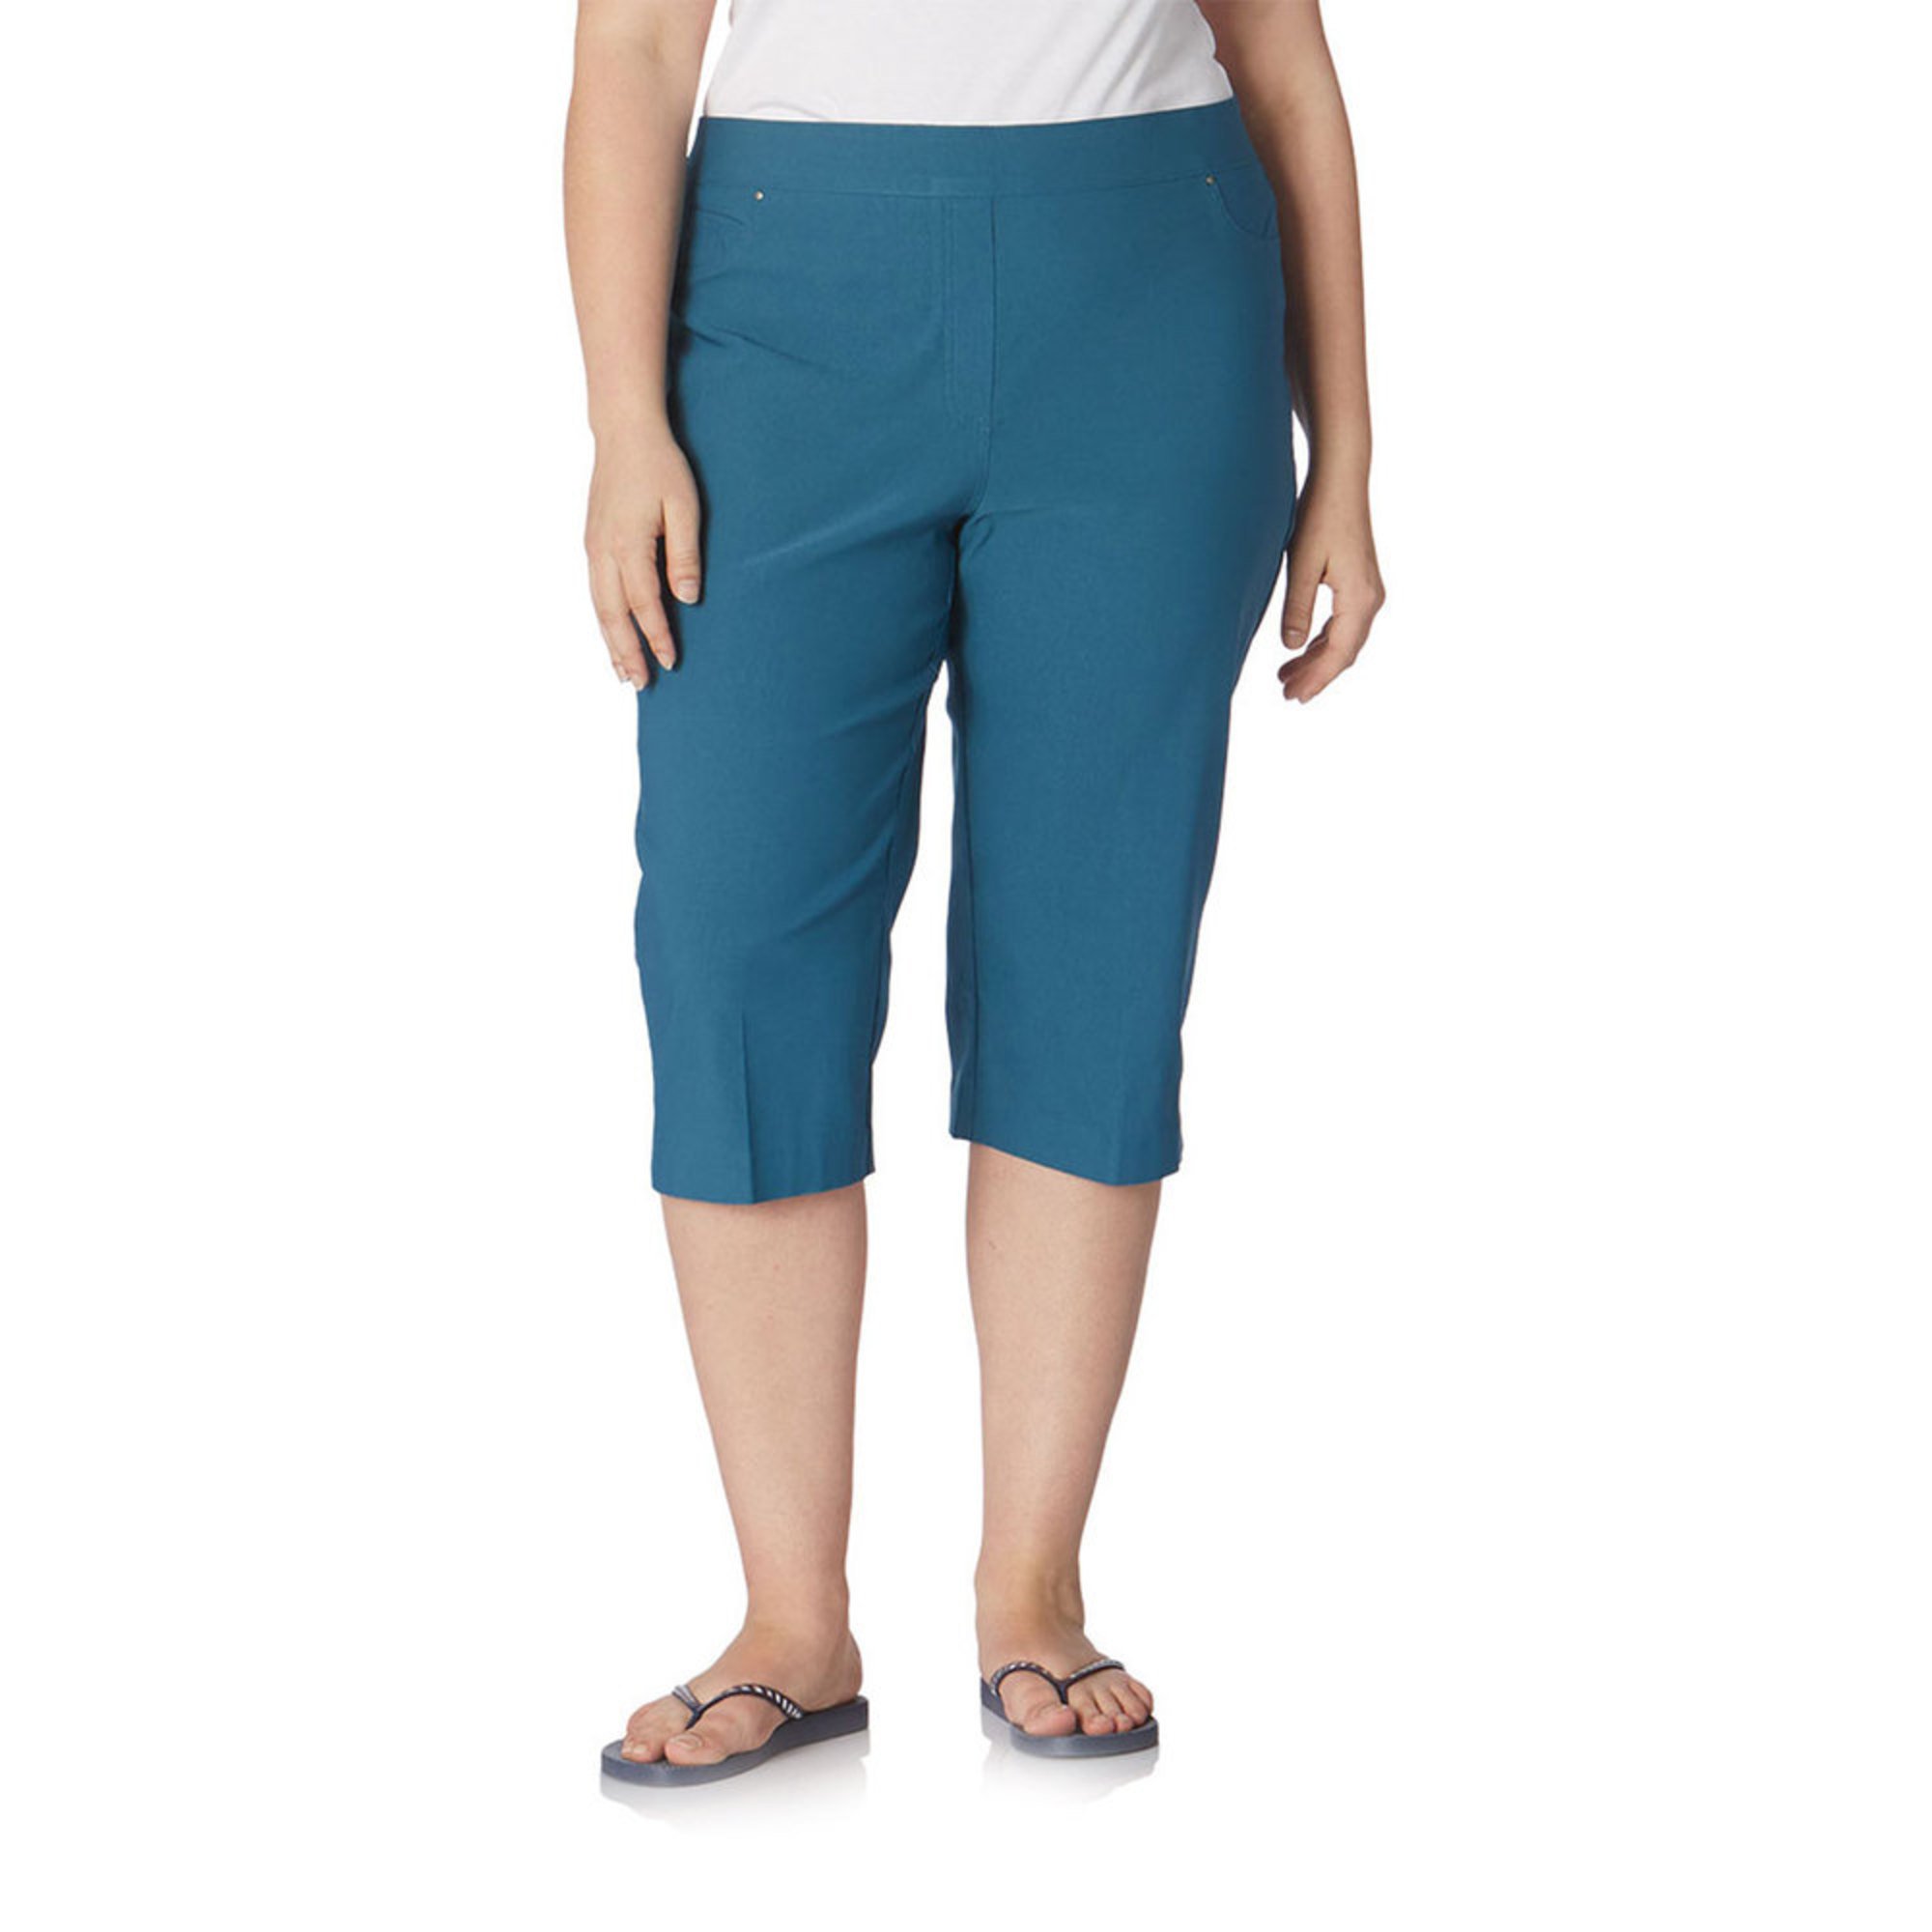 Yarn & Sea Women's Marley Luxe Pull- On Capri Pants | Casual & Dress ...